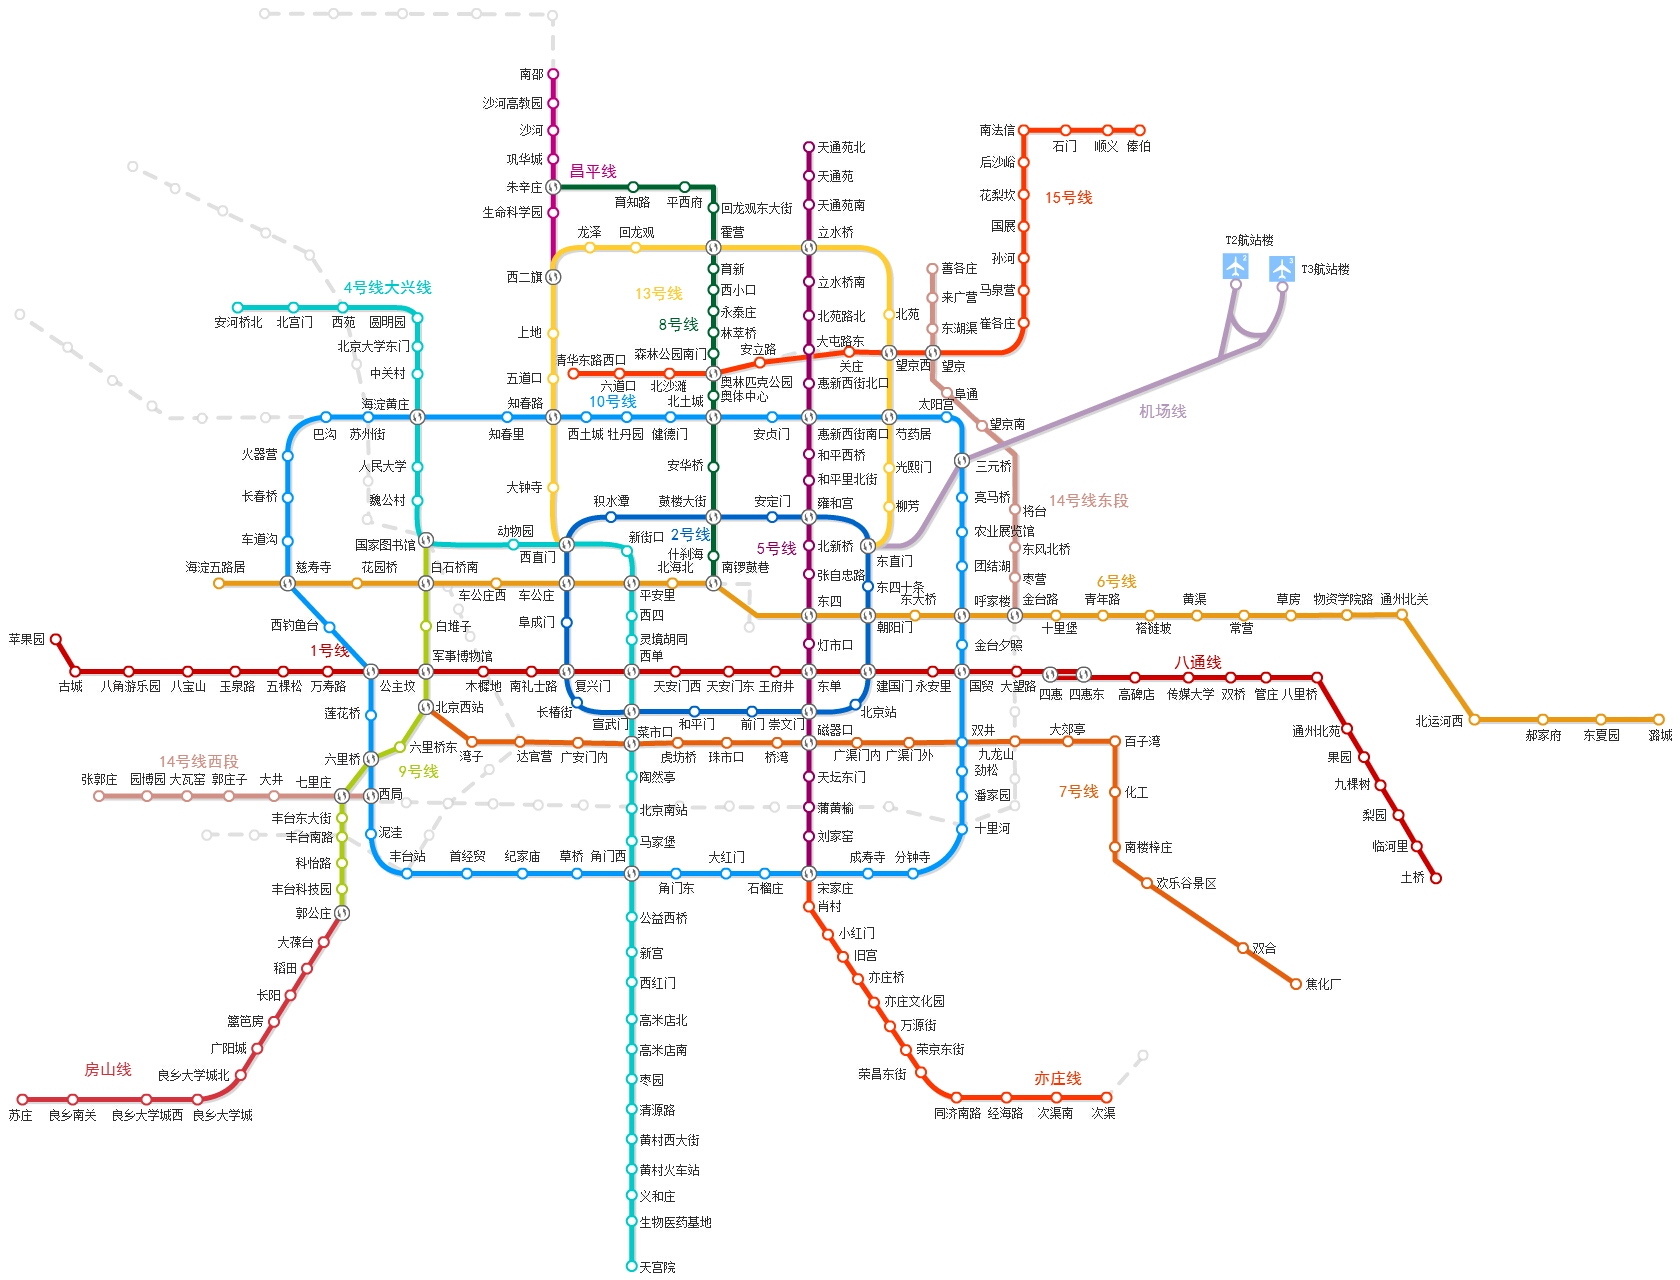 东直门可以换乘地铁二号线,机场大巴通往市区线路很多,您可以自由选择